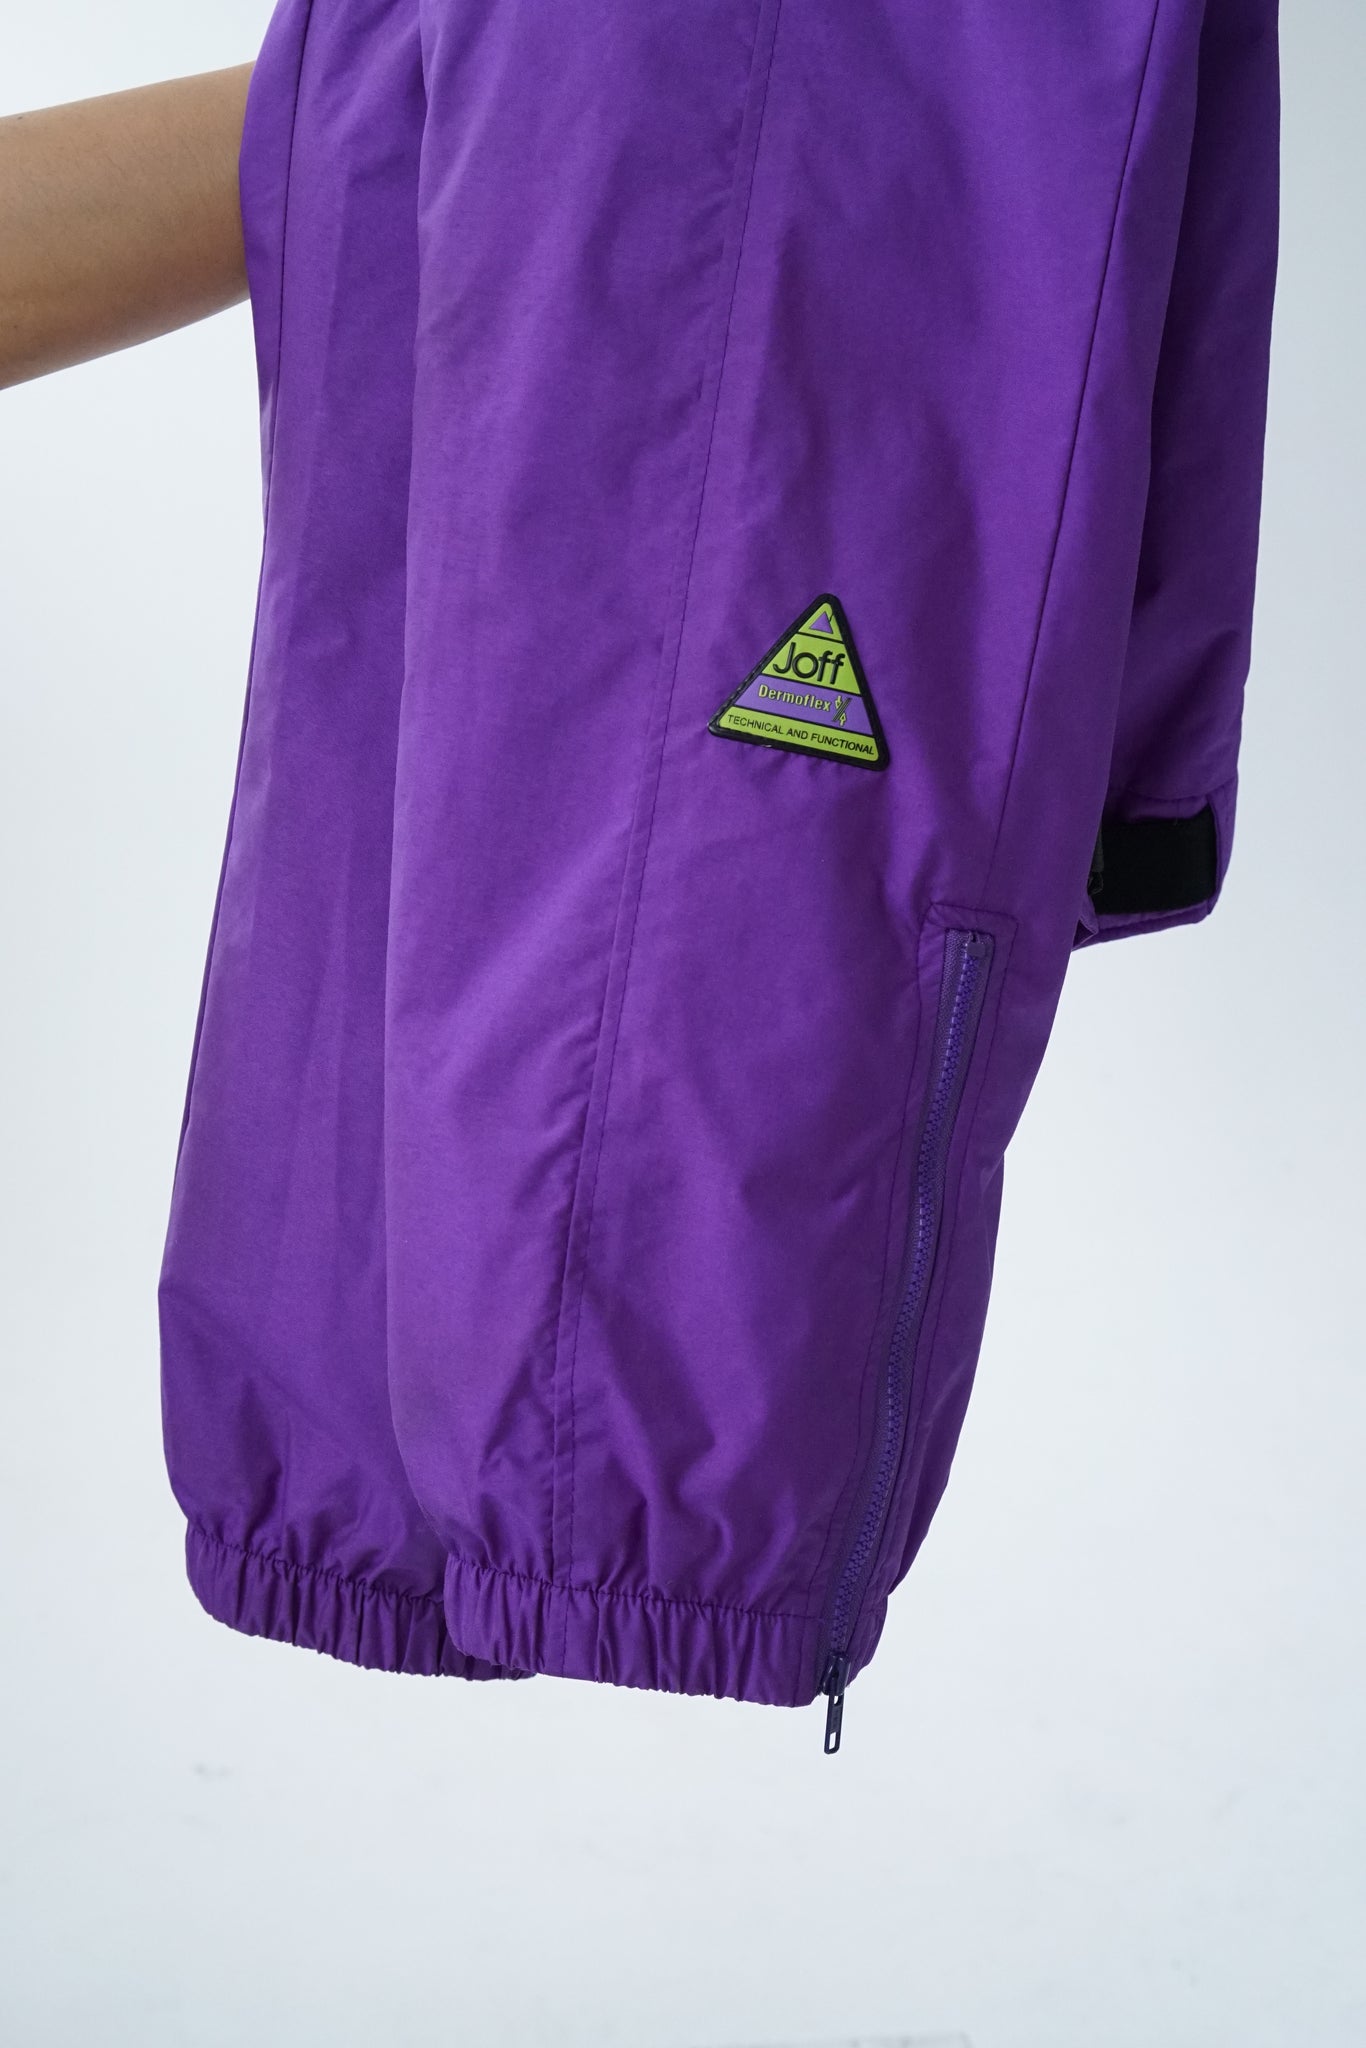 Vintage two-piece Joff ski suit, purple and green snow suit size 14 (M –  Ribotti Vintage